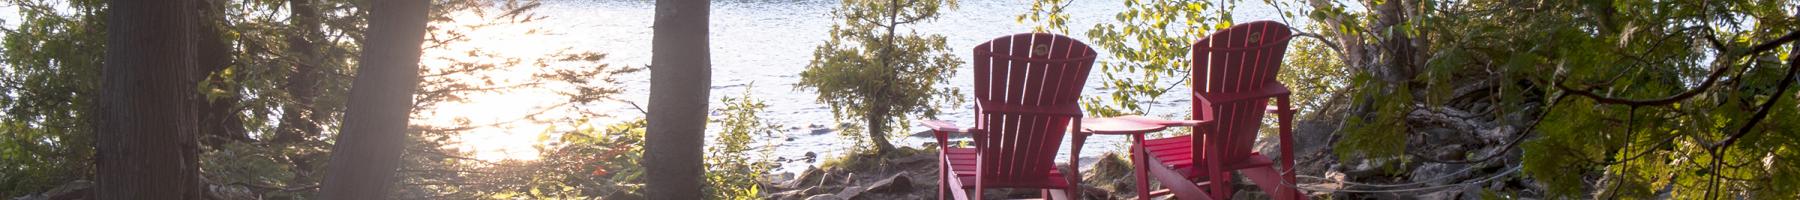 Cadre paisible dans les bois avec deux chaises vides regardant vers le lac.